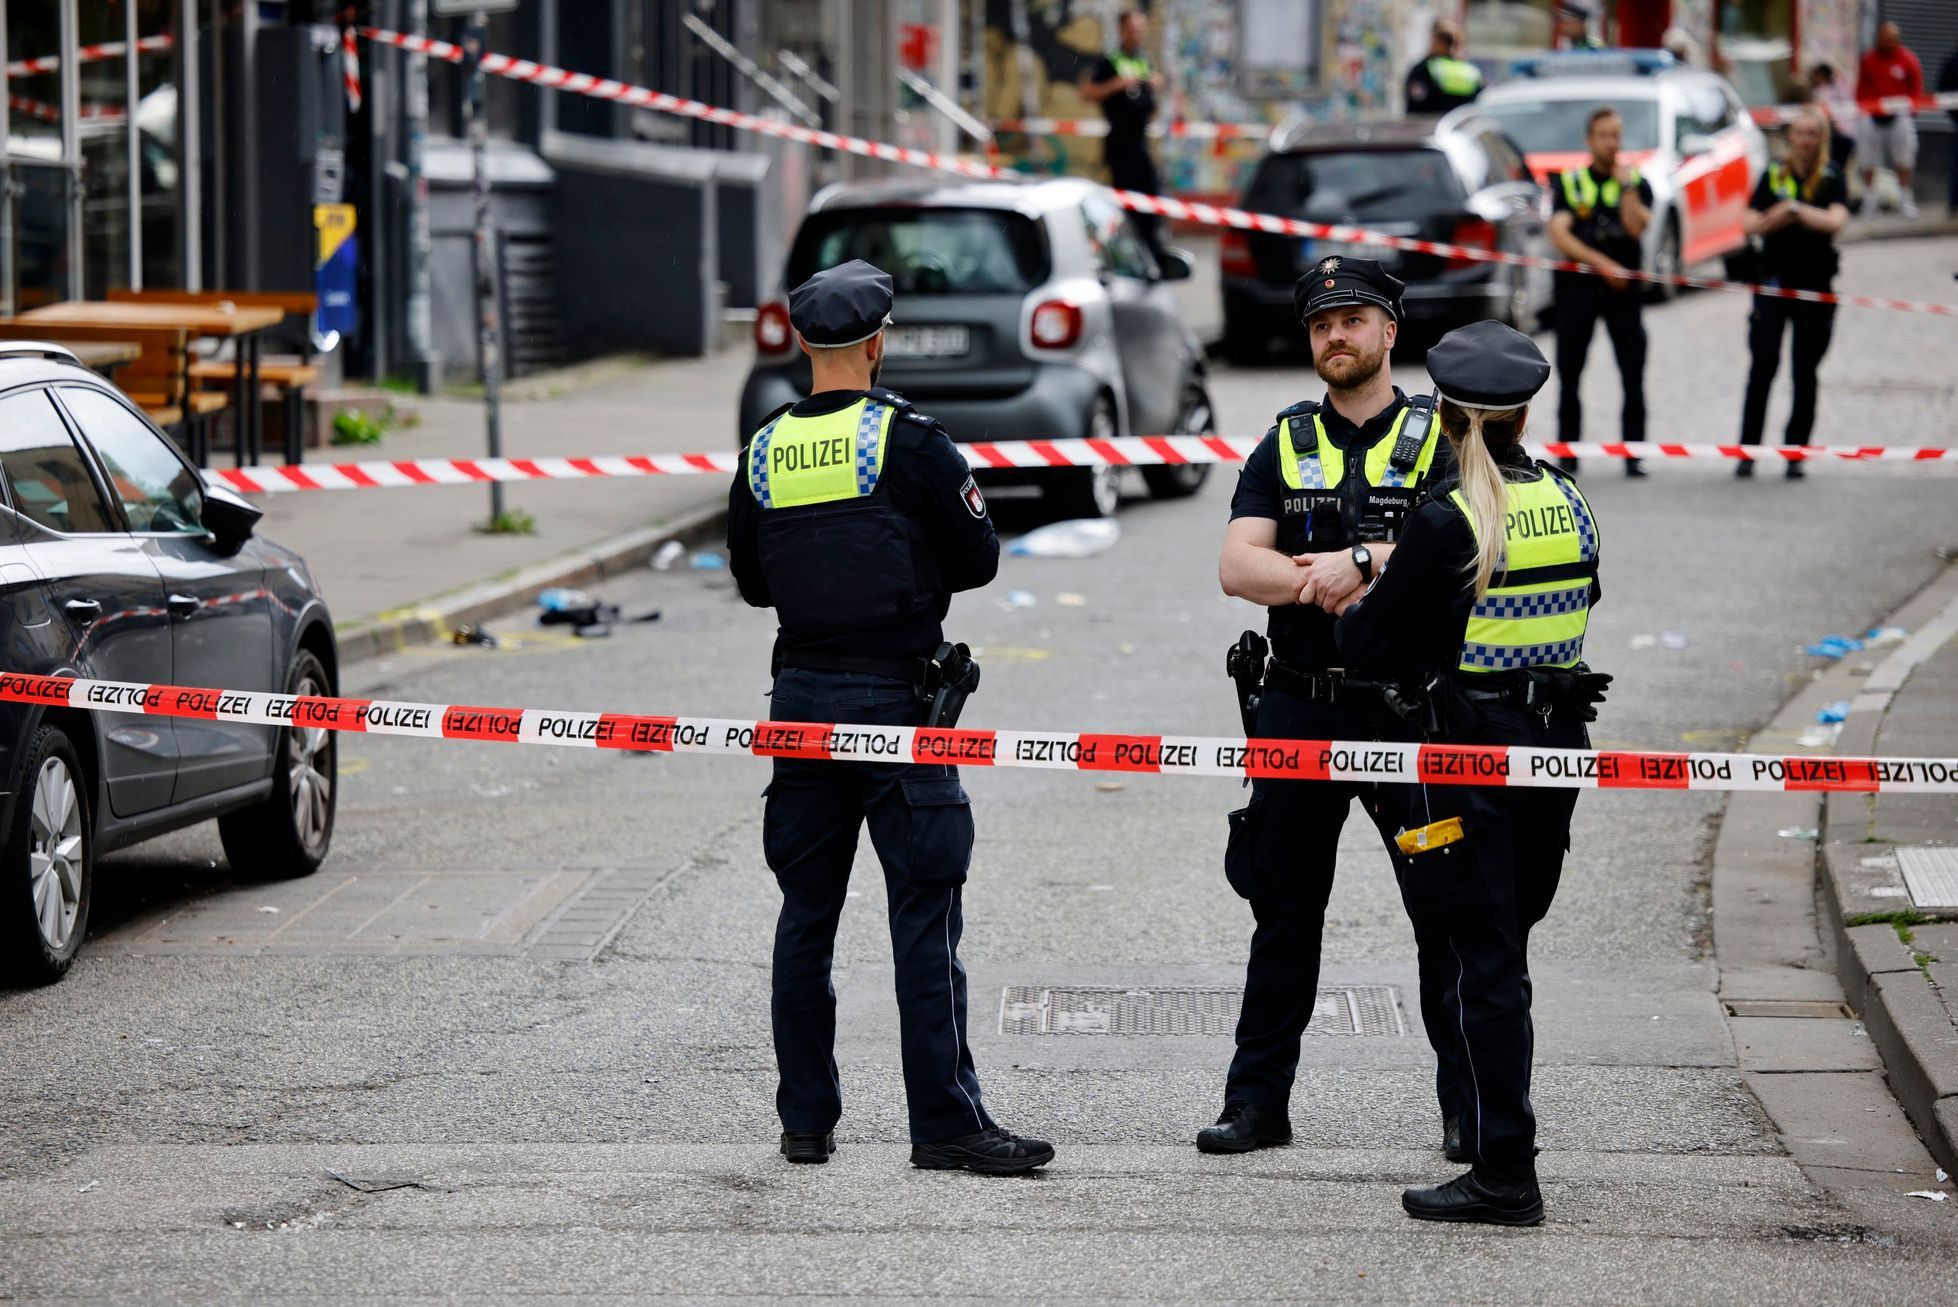 Deutsche Polizisten haben in Hamburg einen Mann erschossen, der Polizisten bedroht hatte